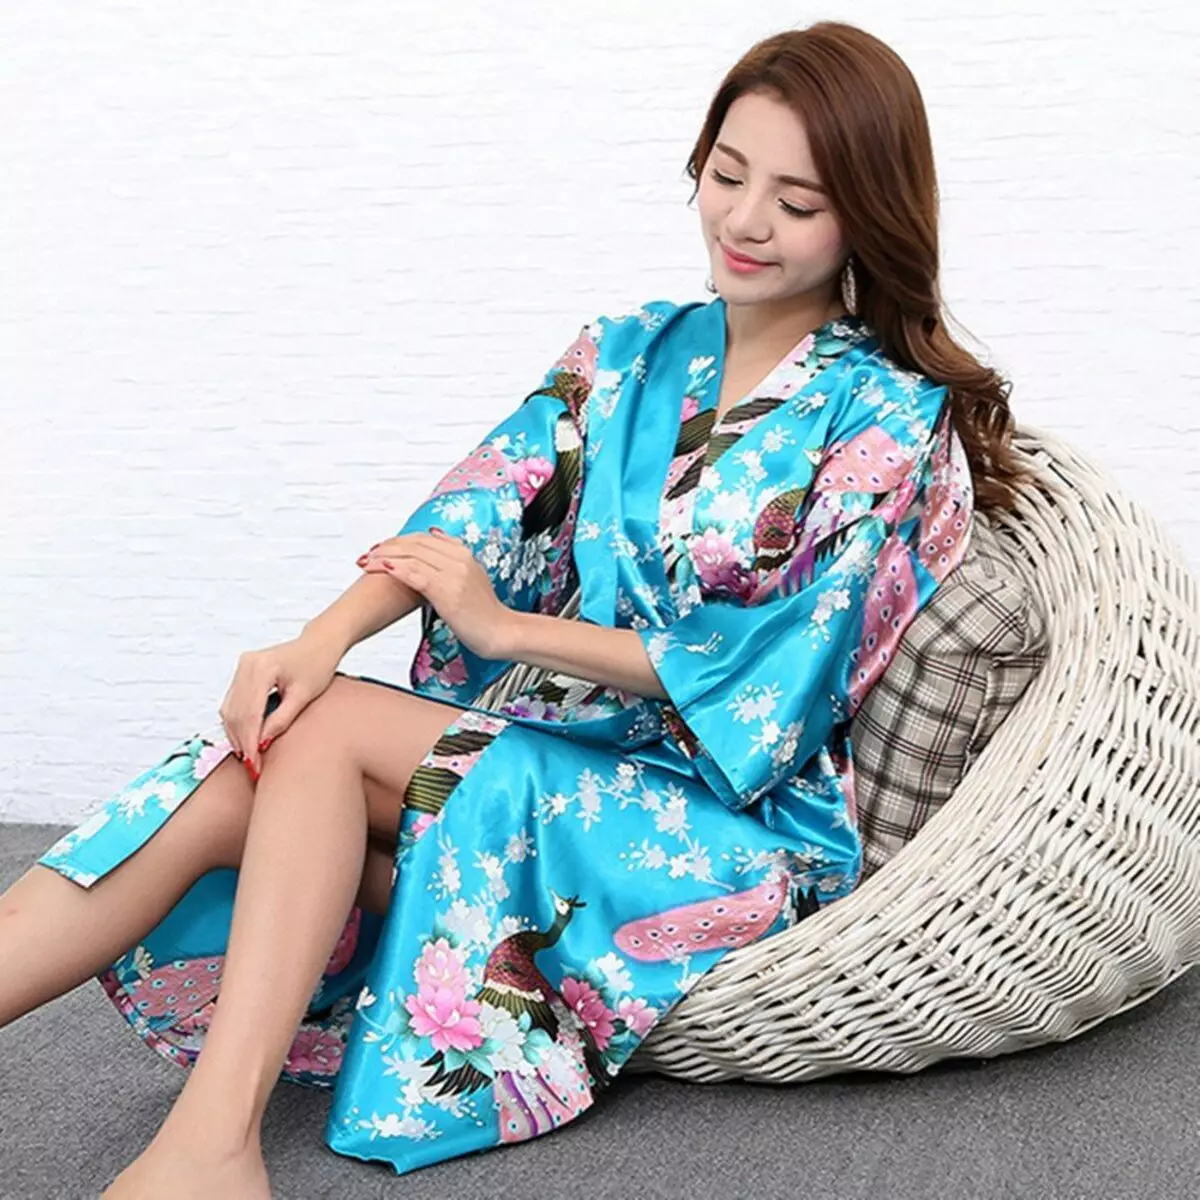 Kimono Bathrobe 59 Lluniau: Rhwymynnau Gwisgo Merched Beautiful yn Kimono Style, Siapan, Lace 1595_10